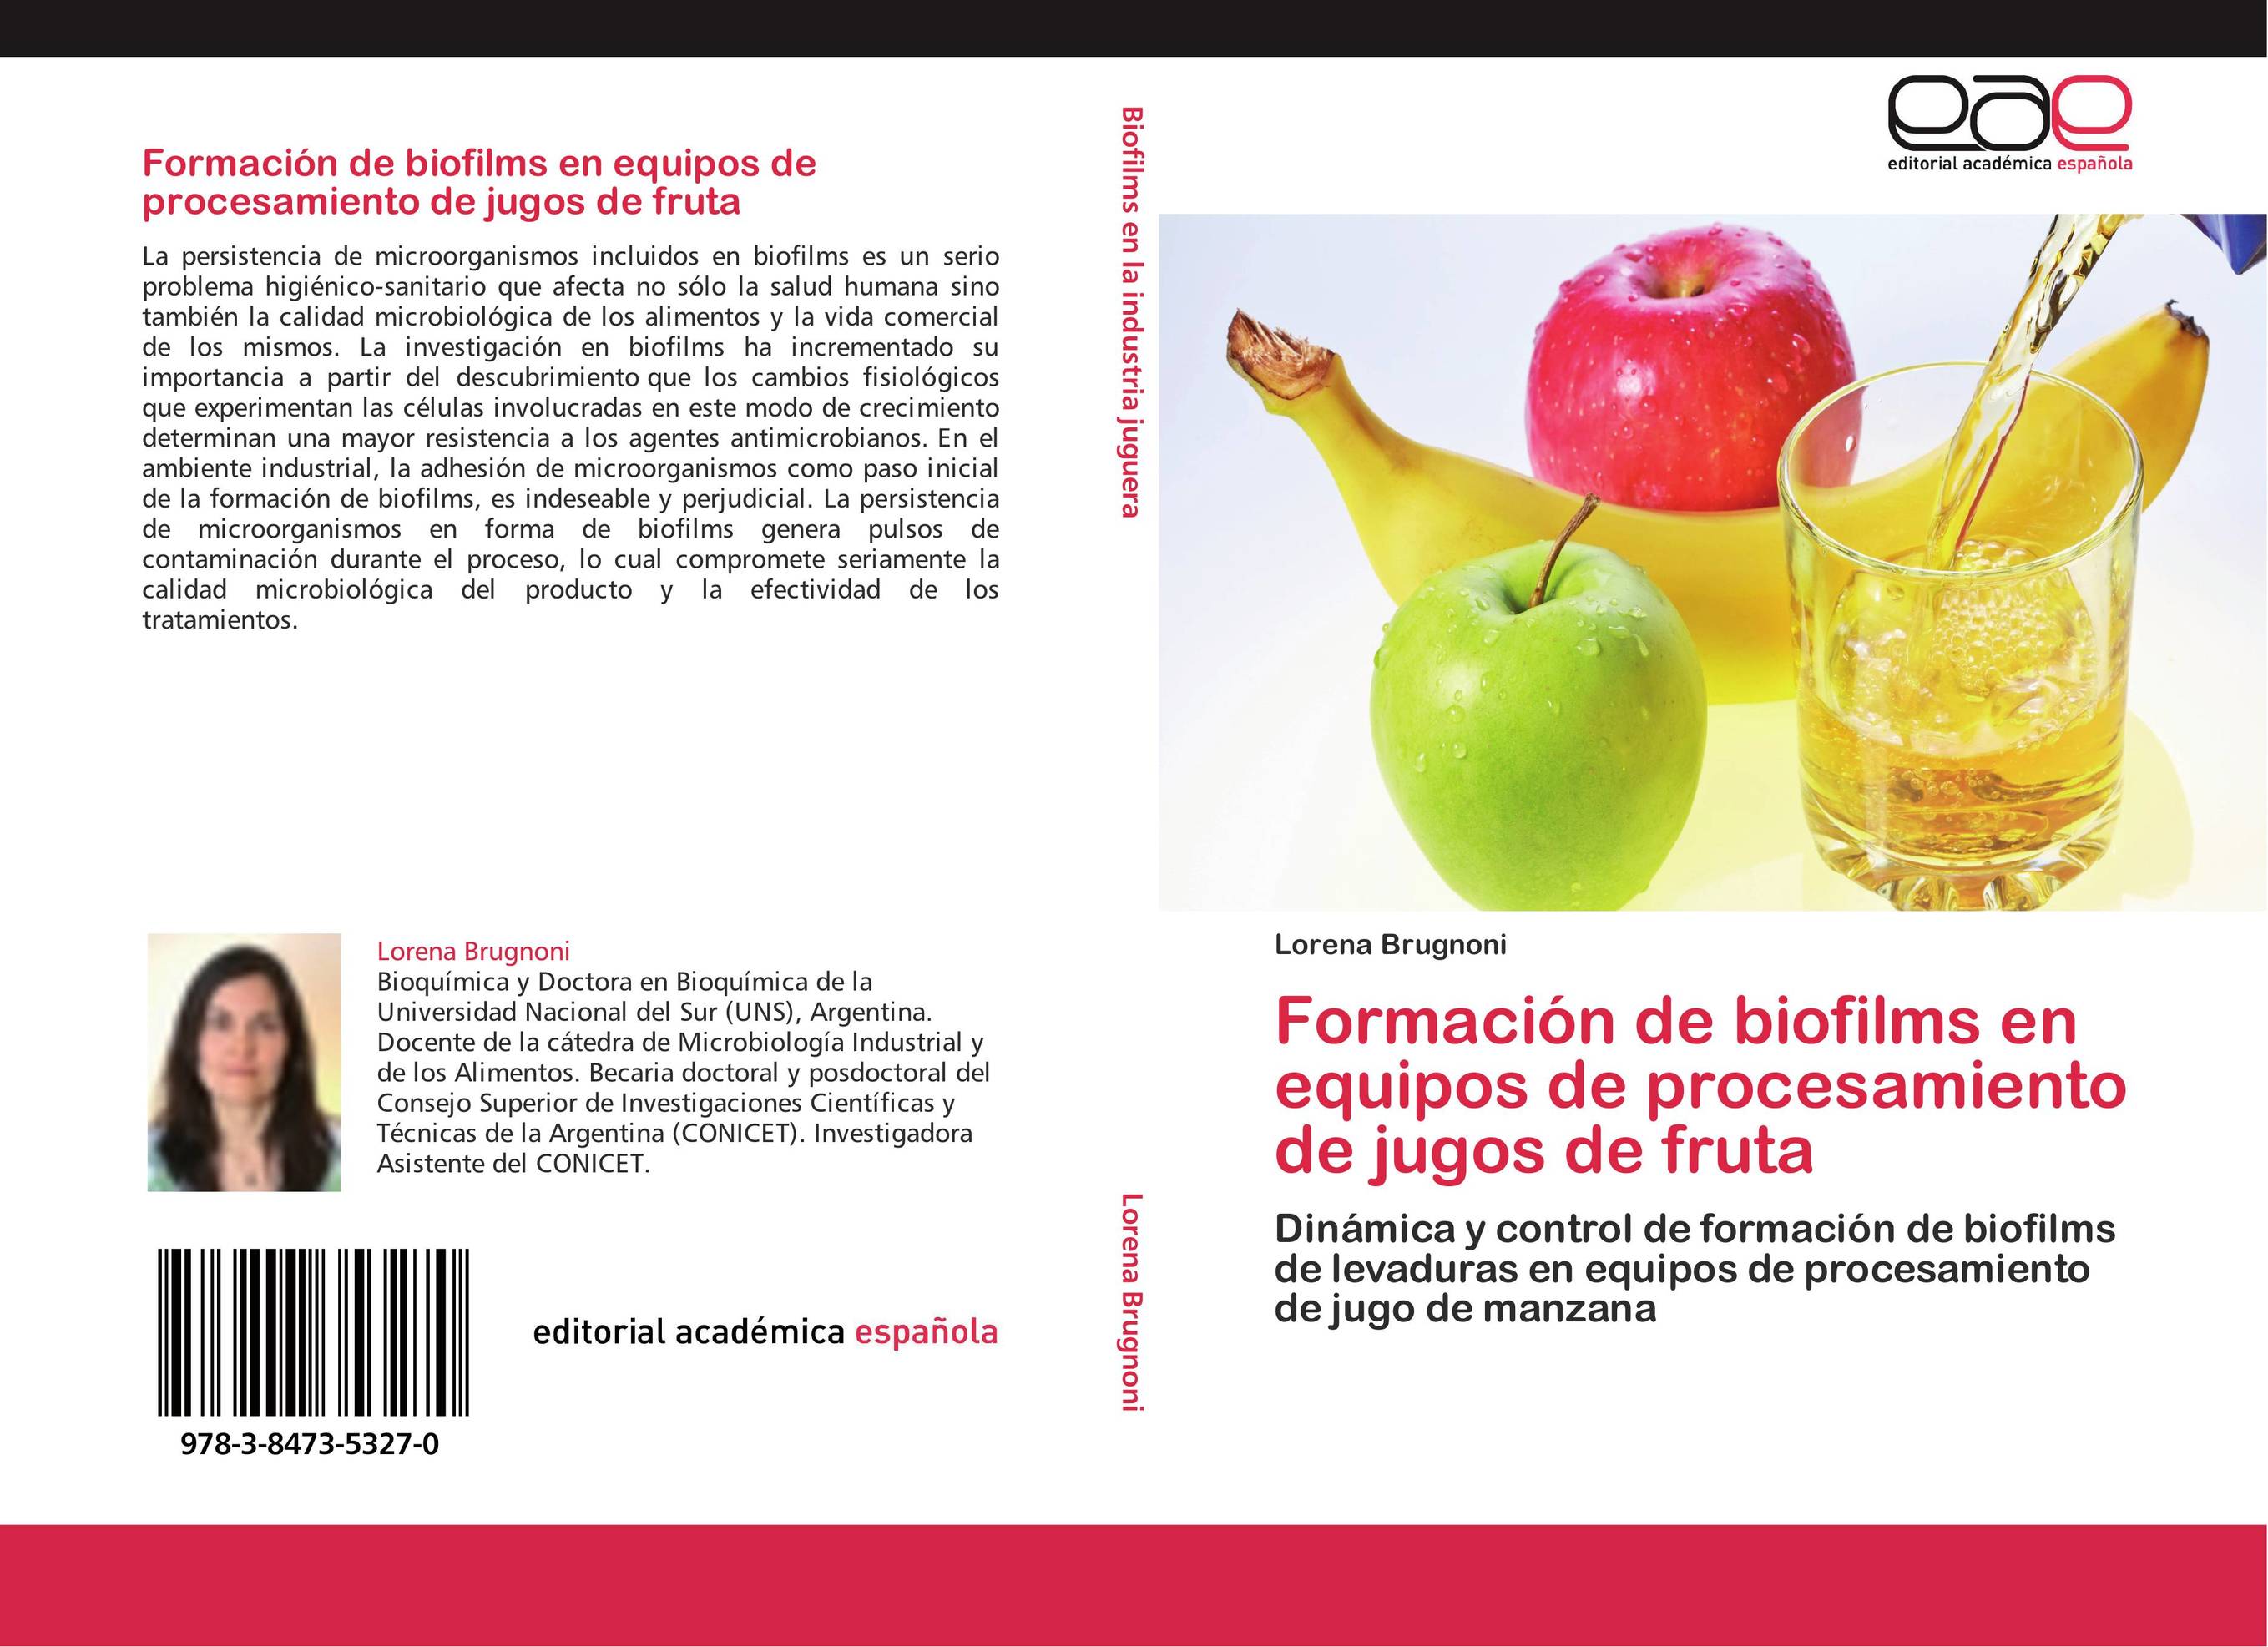 Formación de biofilms en equipos de procesamiento de jugos de fruta